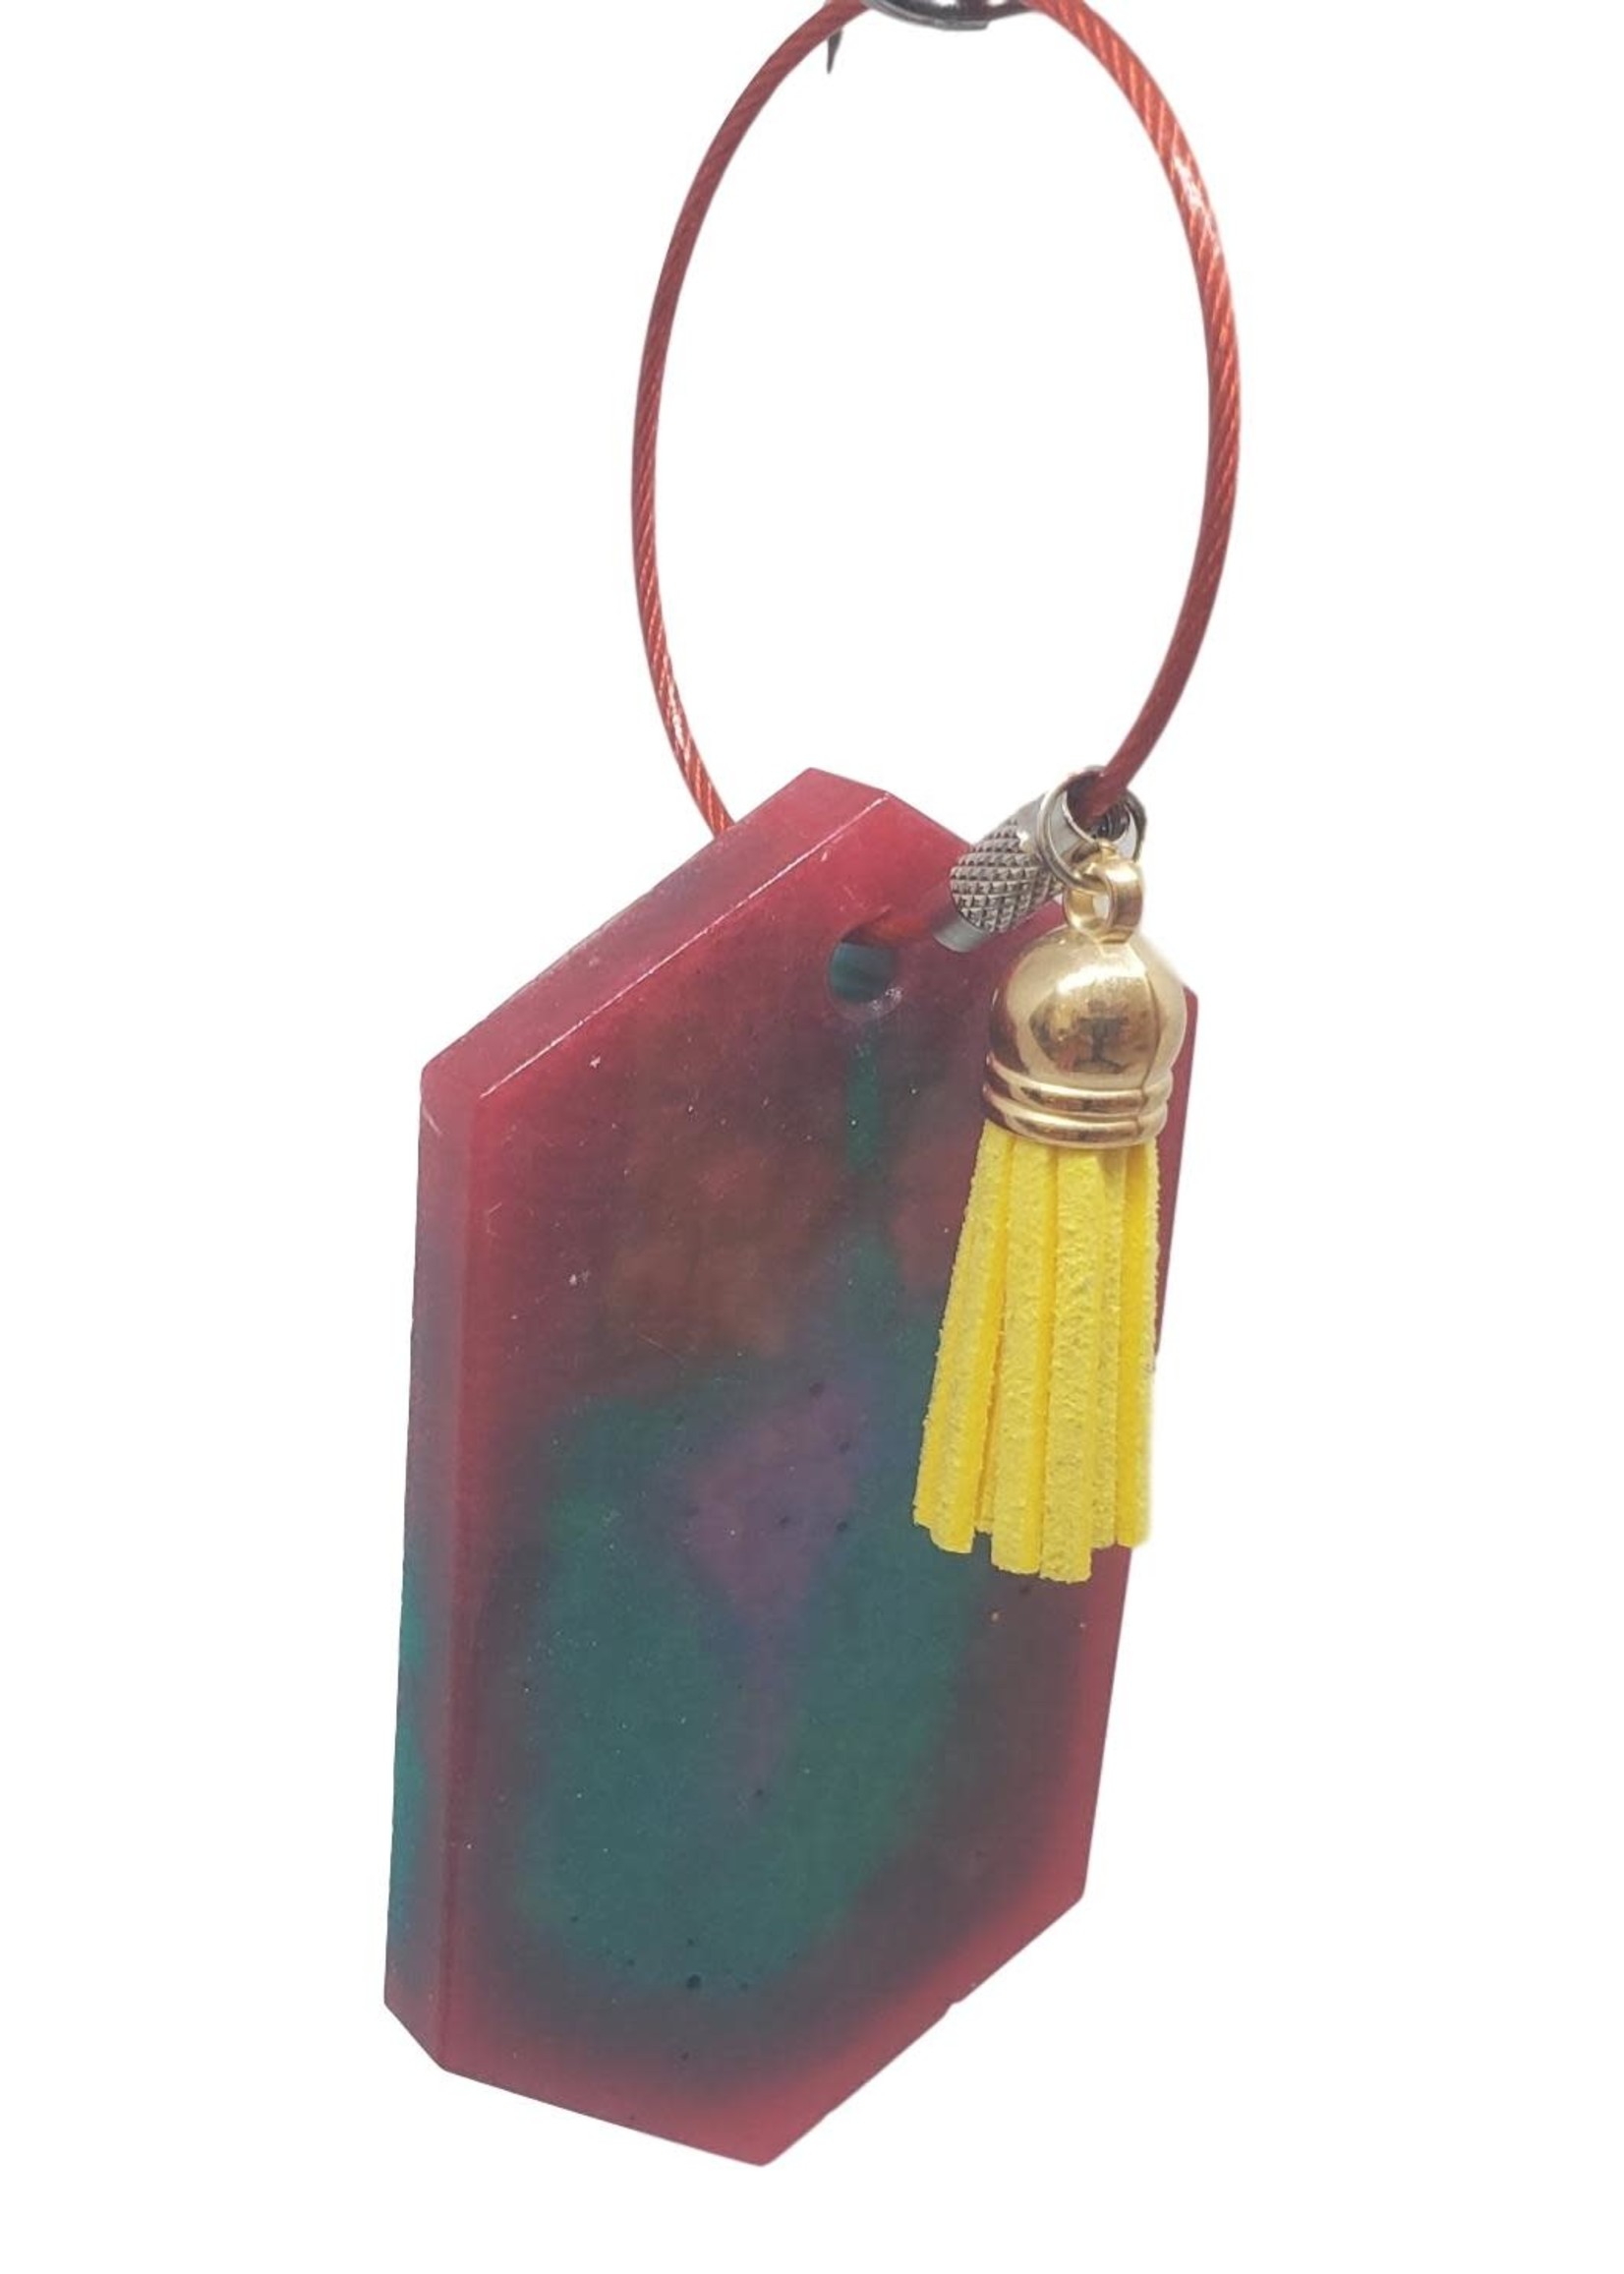 East Coast Sirens Tie-Dye Key Chain/Luggage Tag